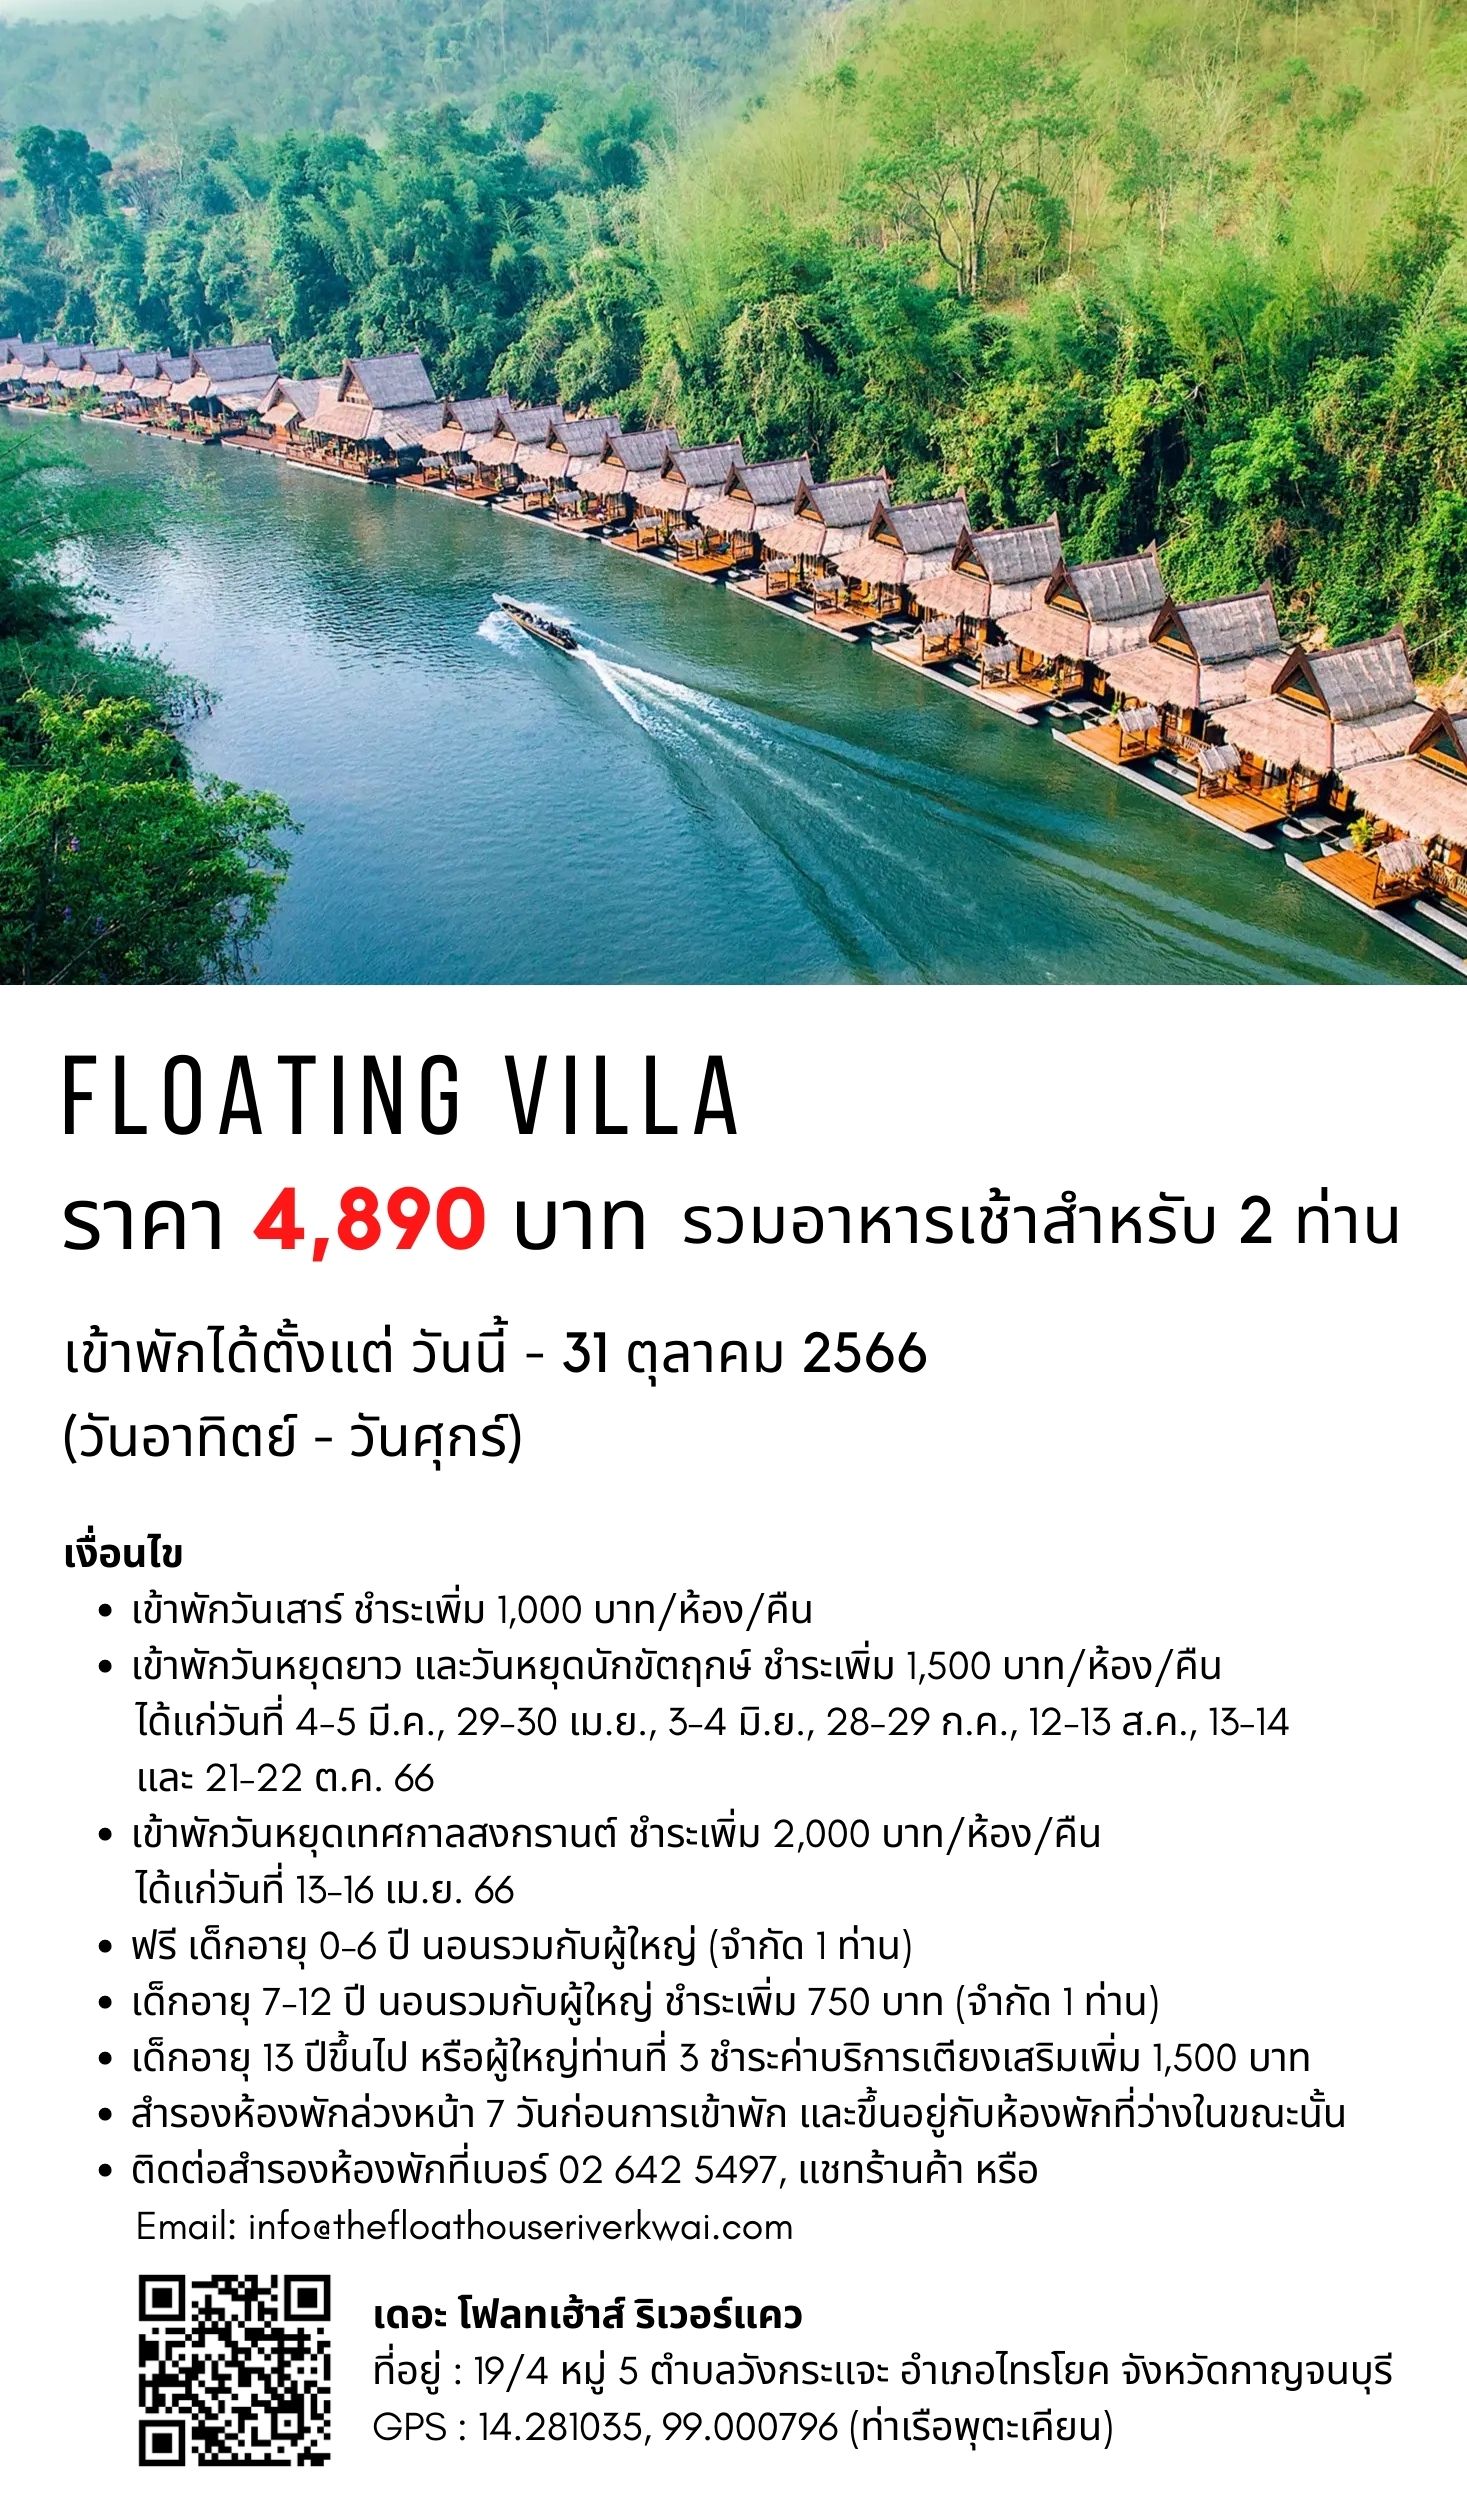 ข้อมูลประกอบของ [E-vo] The Float House River Kwai, กาญจนบุรี - เข้าพักได้ถึง 31 ต.ค. 66 ห้อง Floating Villa 1 คืน พร้อมอาหารเช้า 2 ท่าน